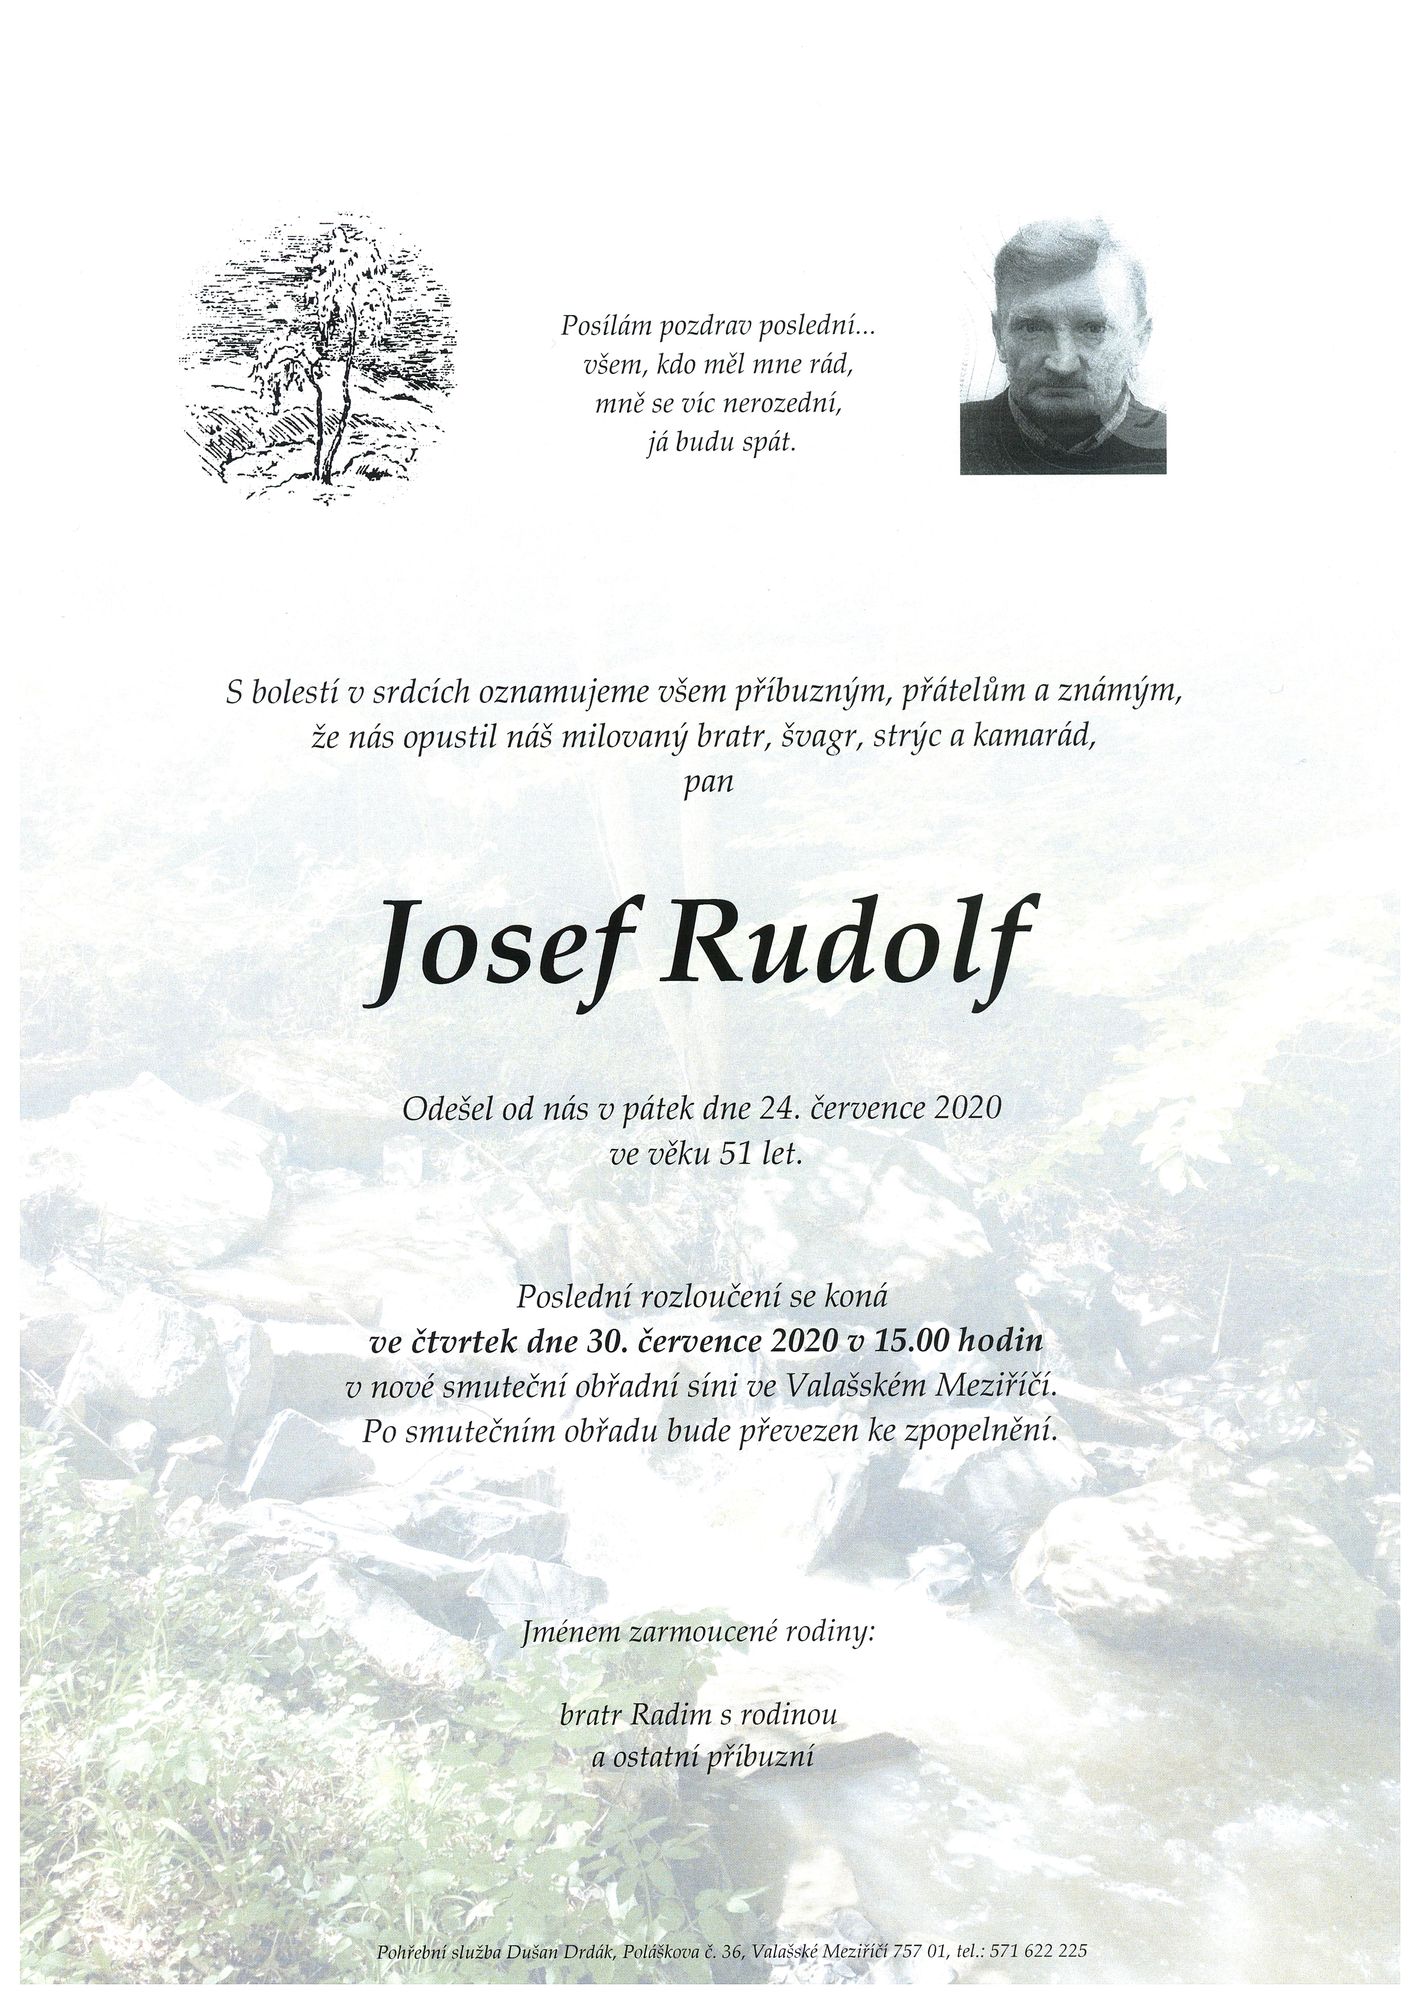 Josef Rudolf